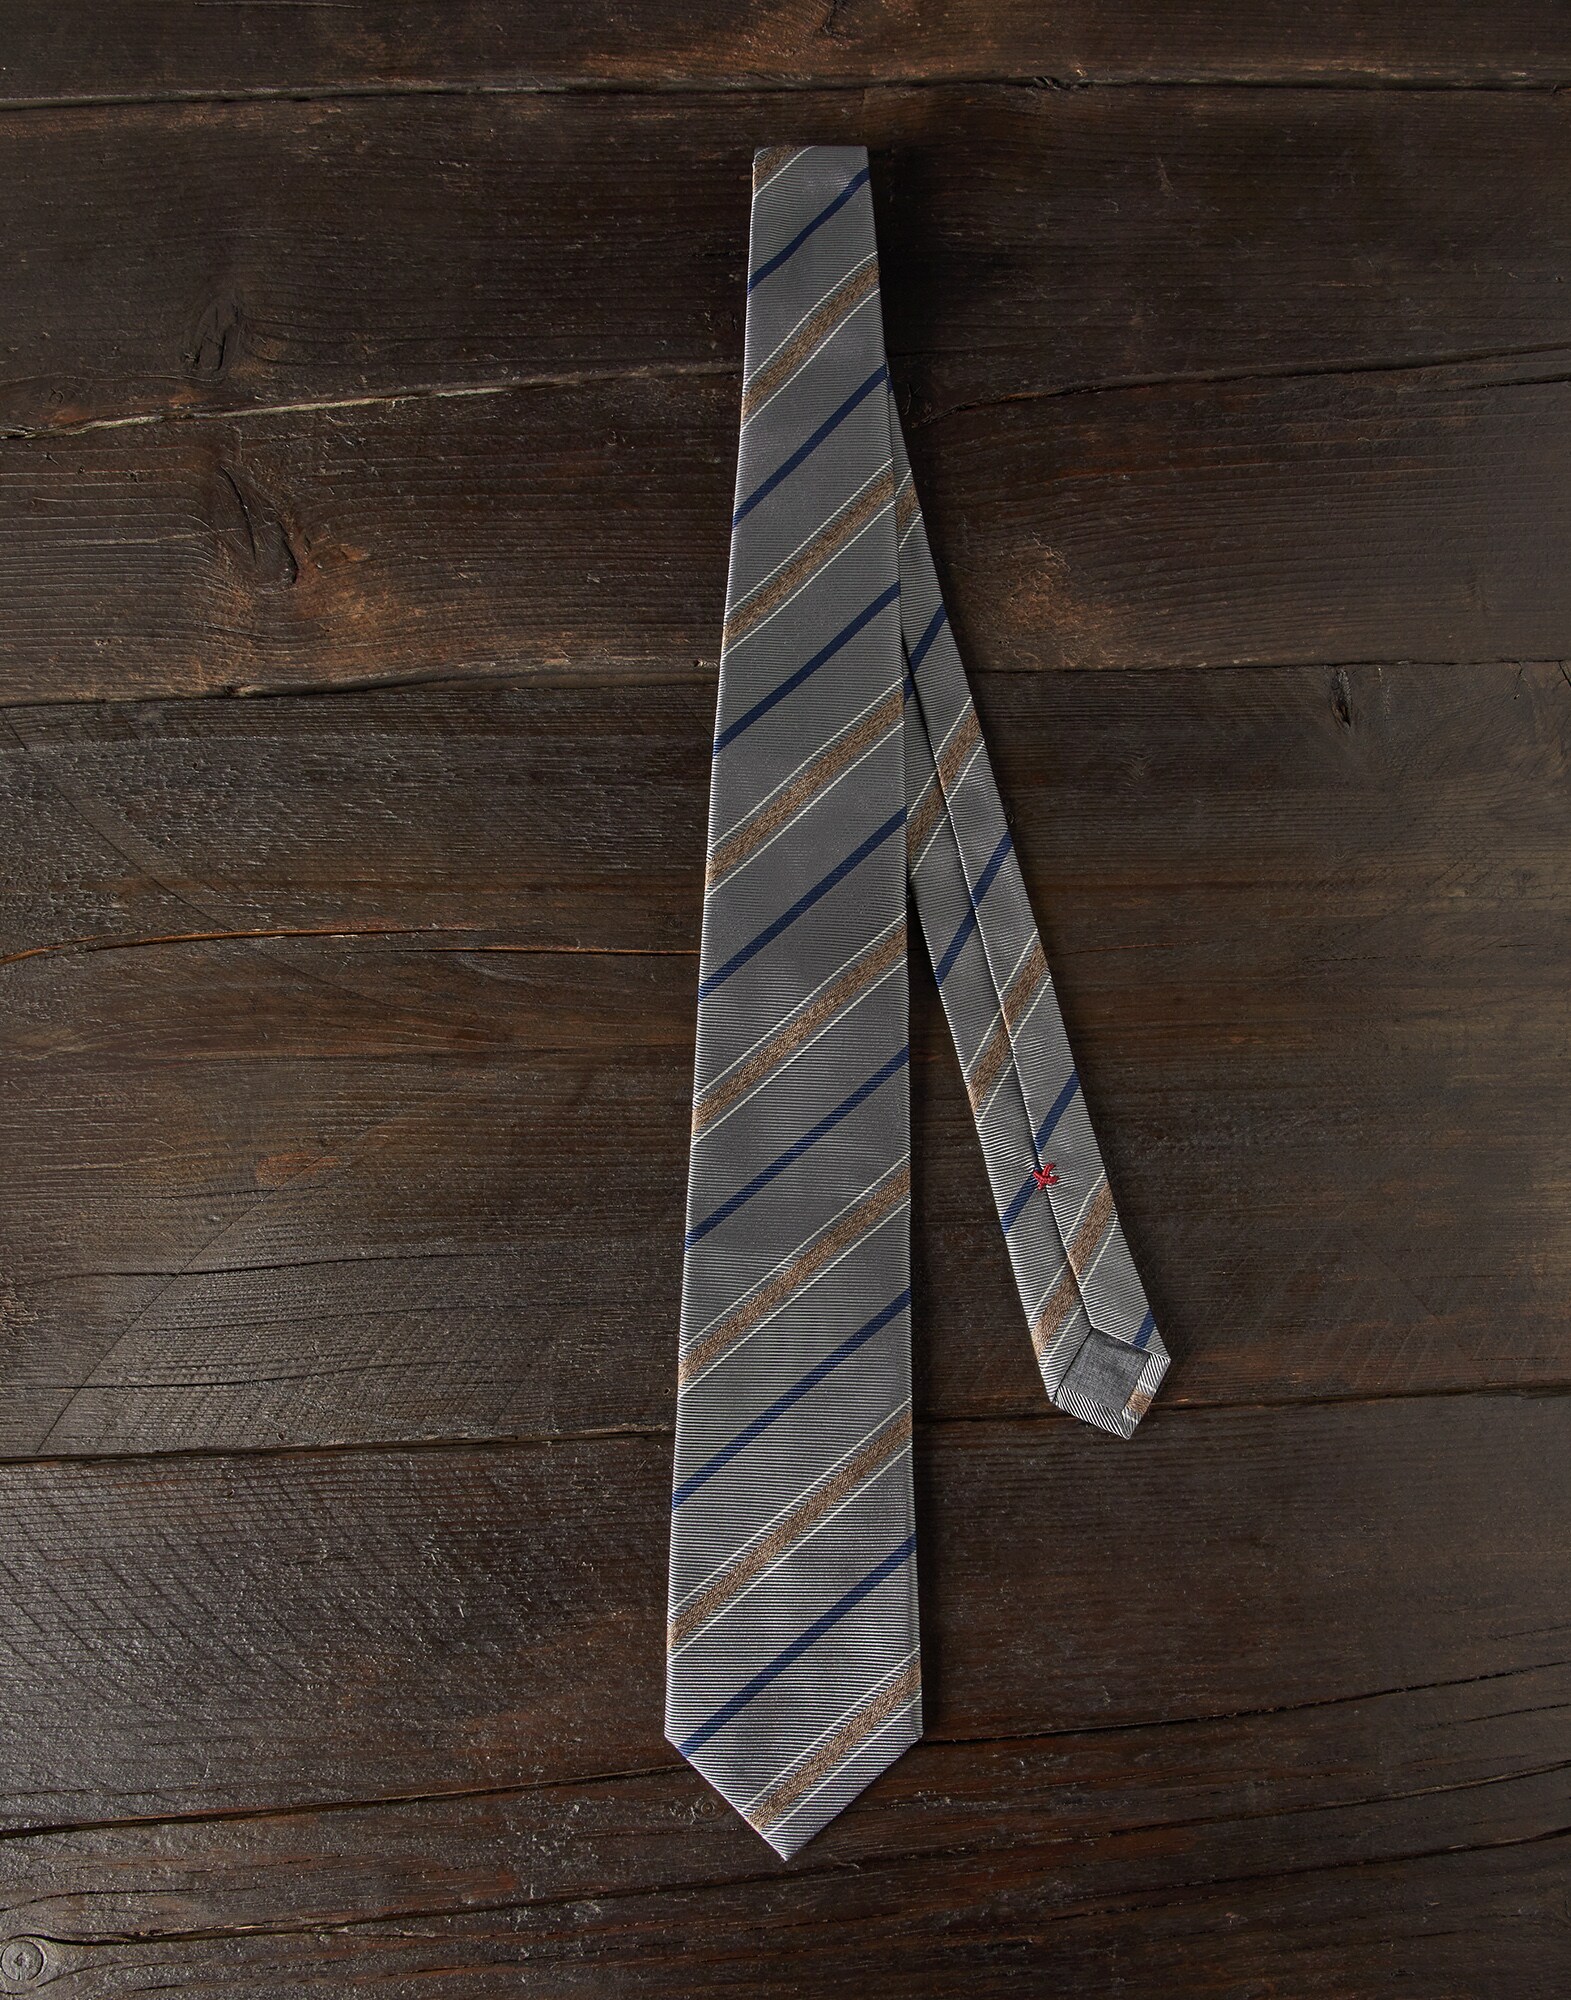 Krawatte aus Seide mit Struktur-Streifen